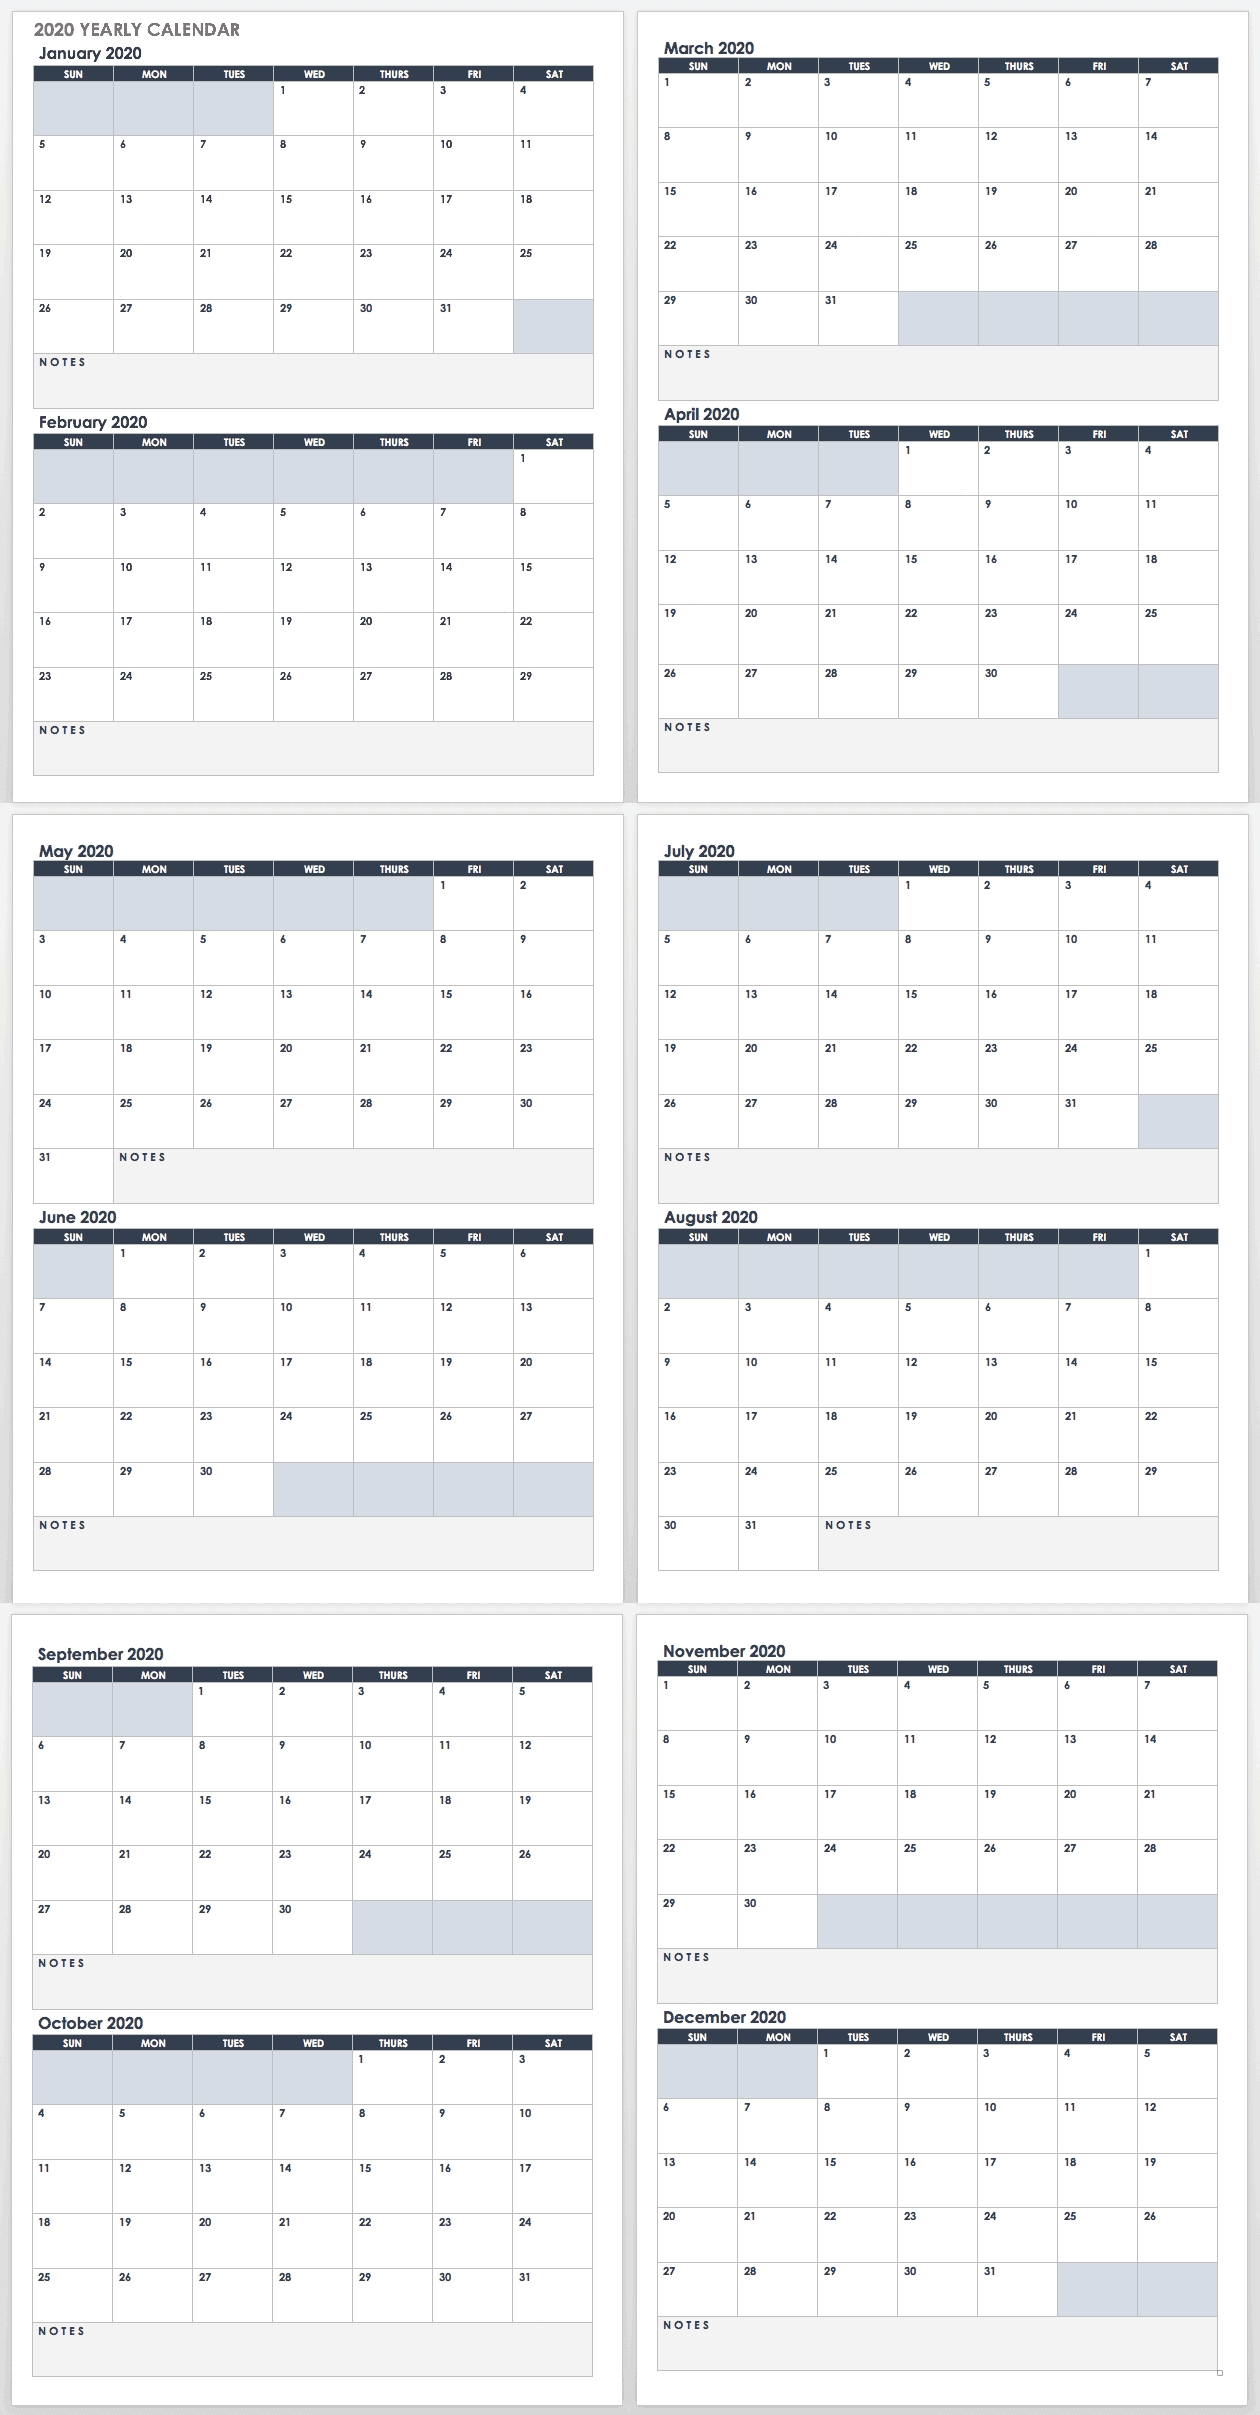 2020 Employee Attendance Calendar Free | Calendar For Planning  Printable Employee Attendance Calendar Template